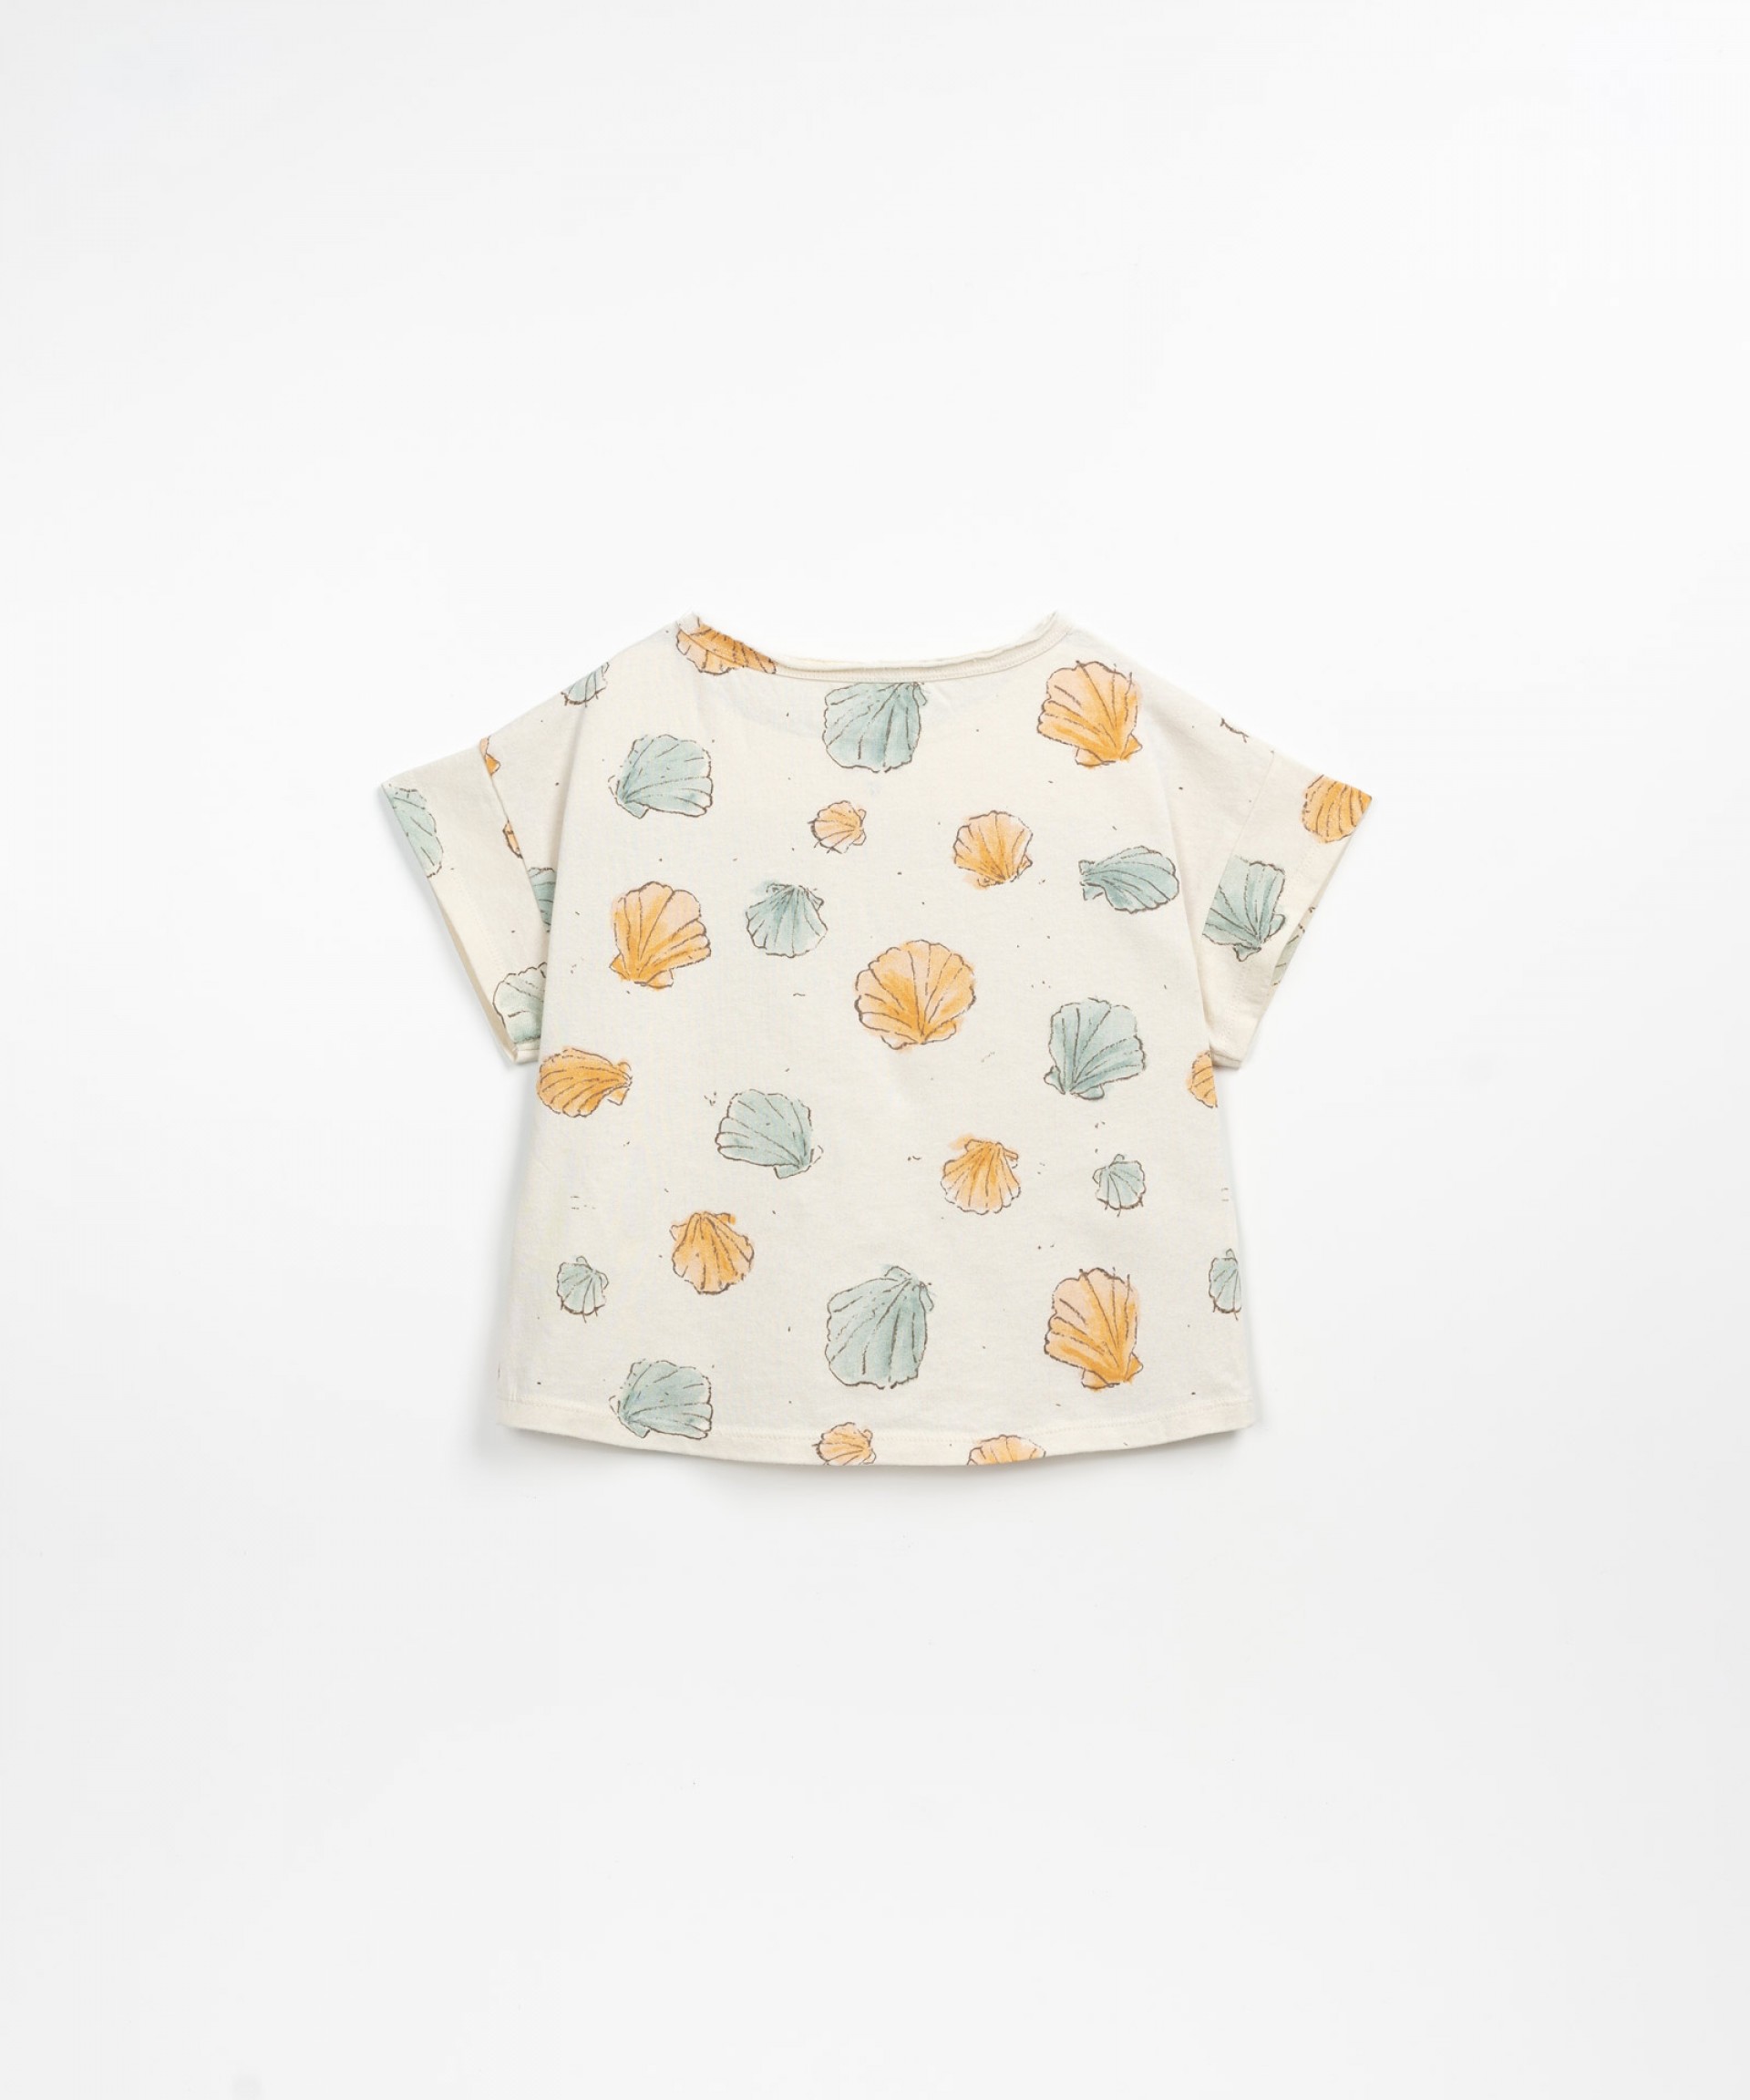 T-shirt mistura de algodo orgnico e algodo reciclado | Textile Art